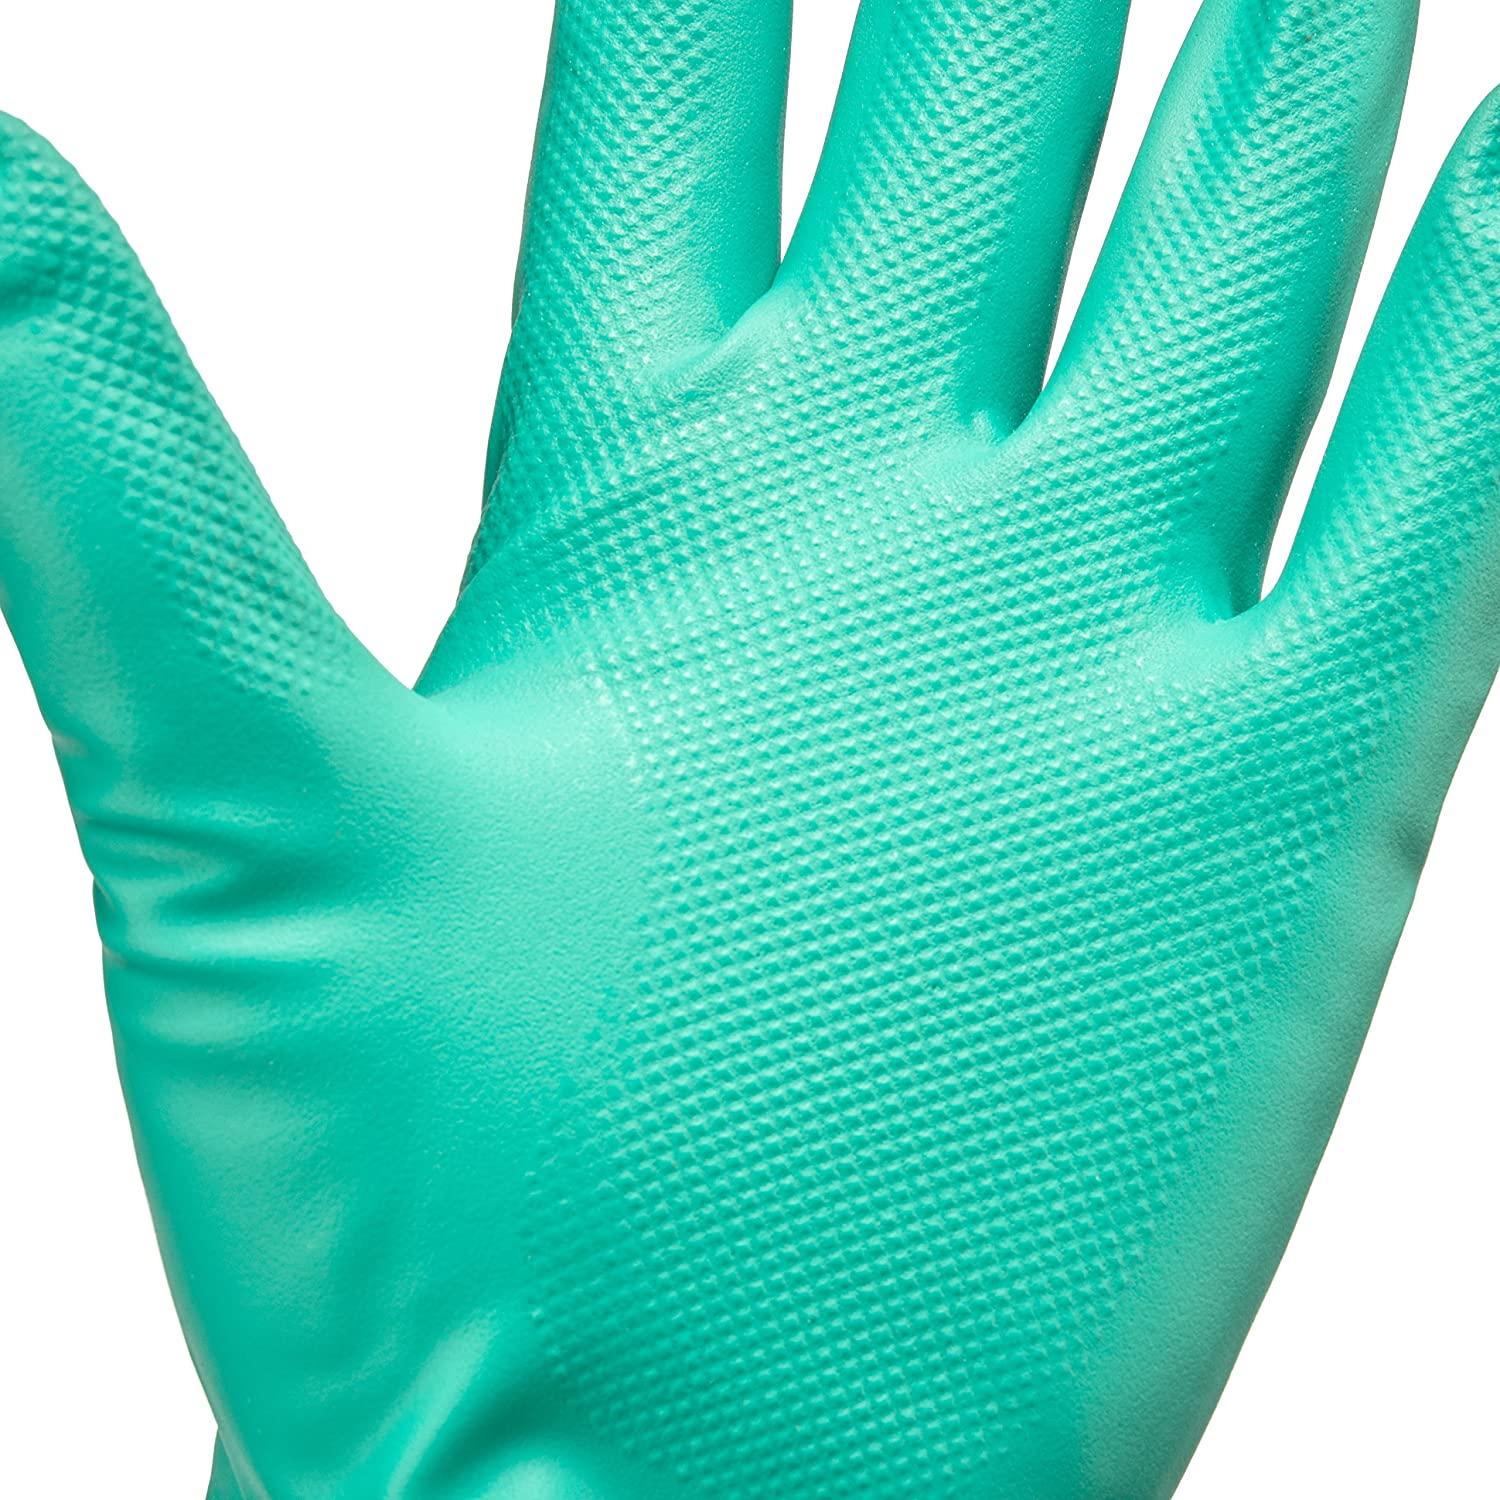 Cut Glove Reusable Rubber Hand Gloves (Pair) - Green